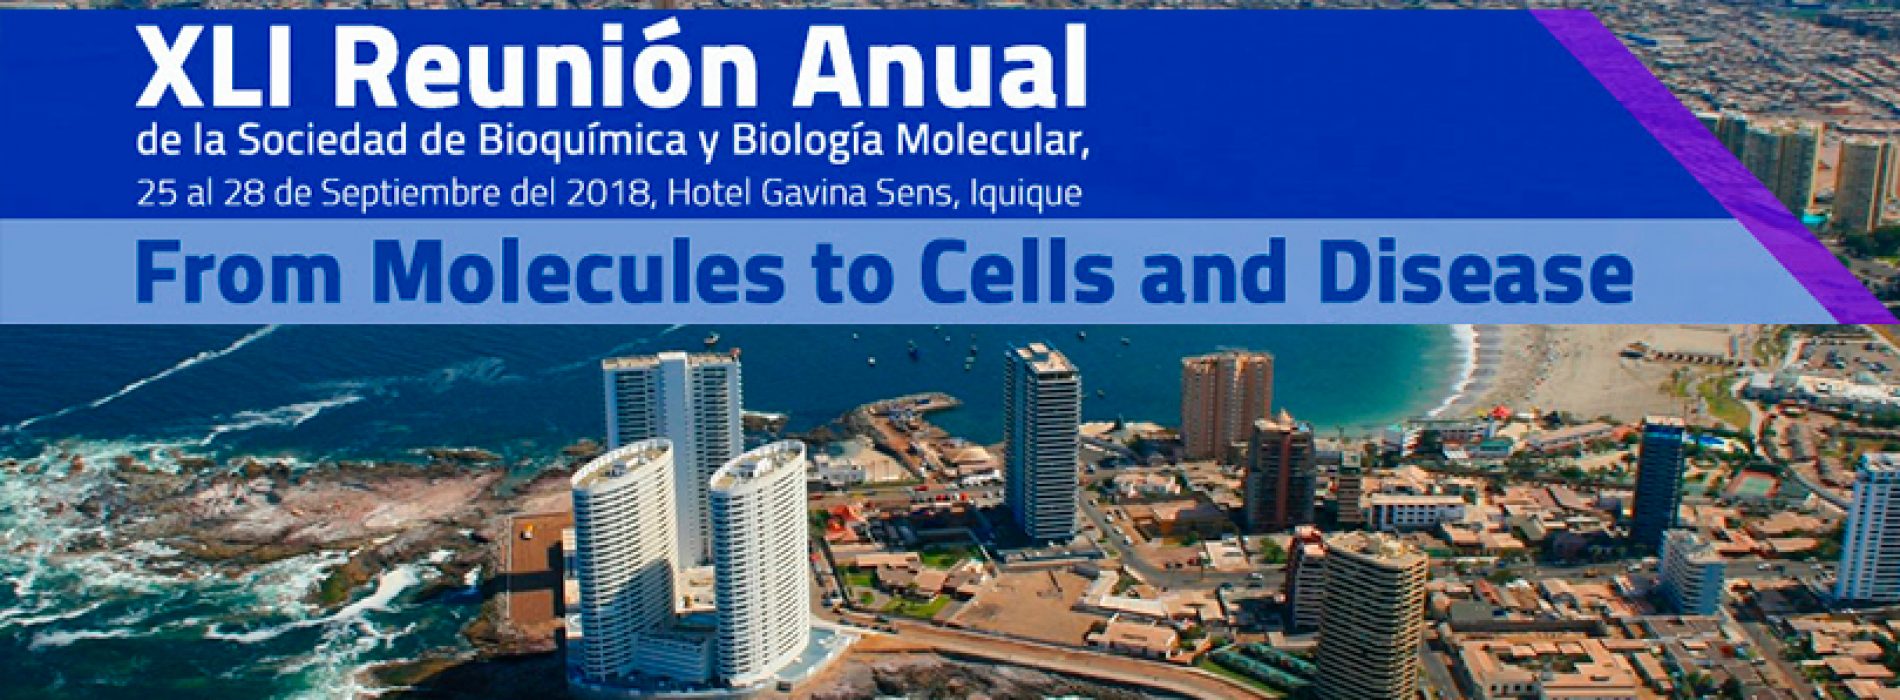 XLI Reunión Anual de la Sociedad de Bioquímica y Biología Molecular, 25 al 28 de Septiembre del 2018, Hotel Gavina Sens, Iquique